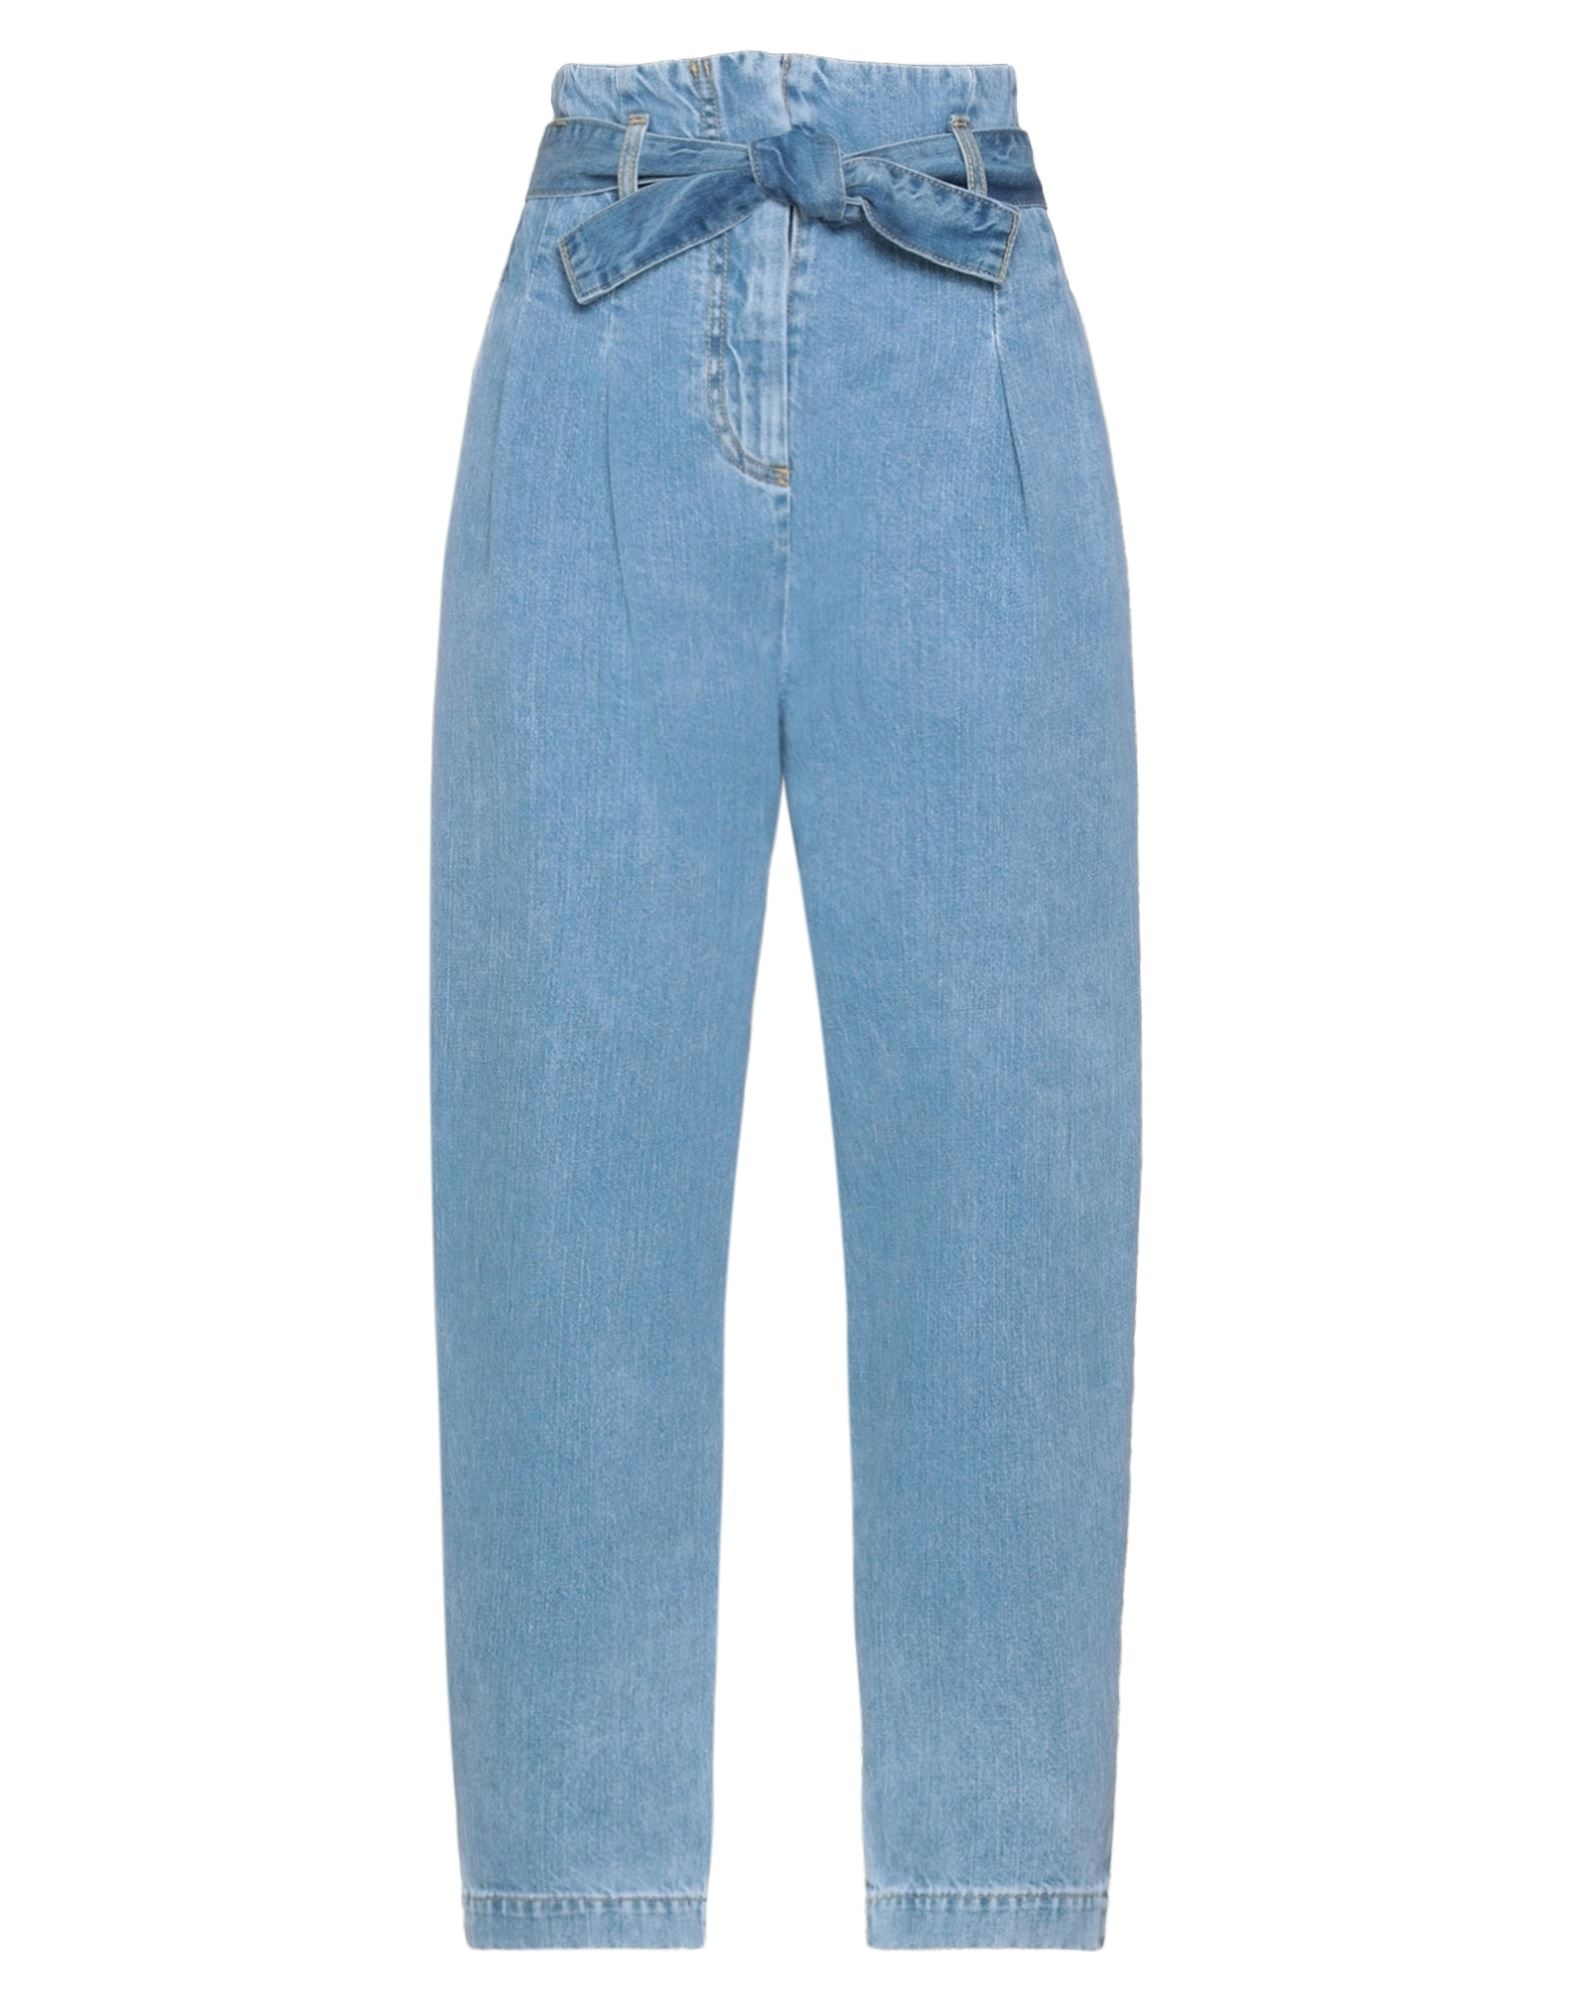 Shop Wandering Woman Jeans Blue Size 8 Cotton